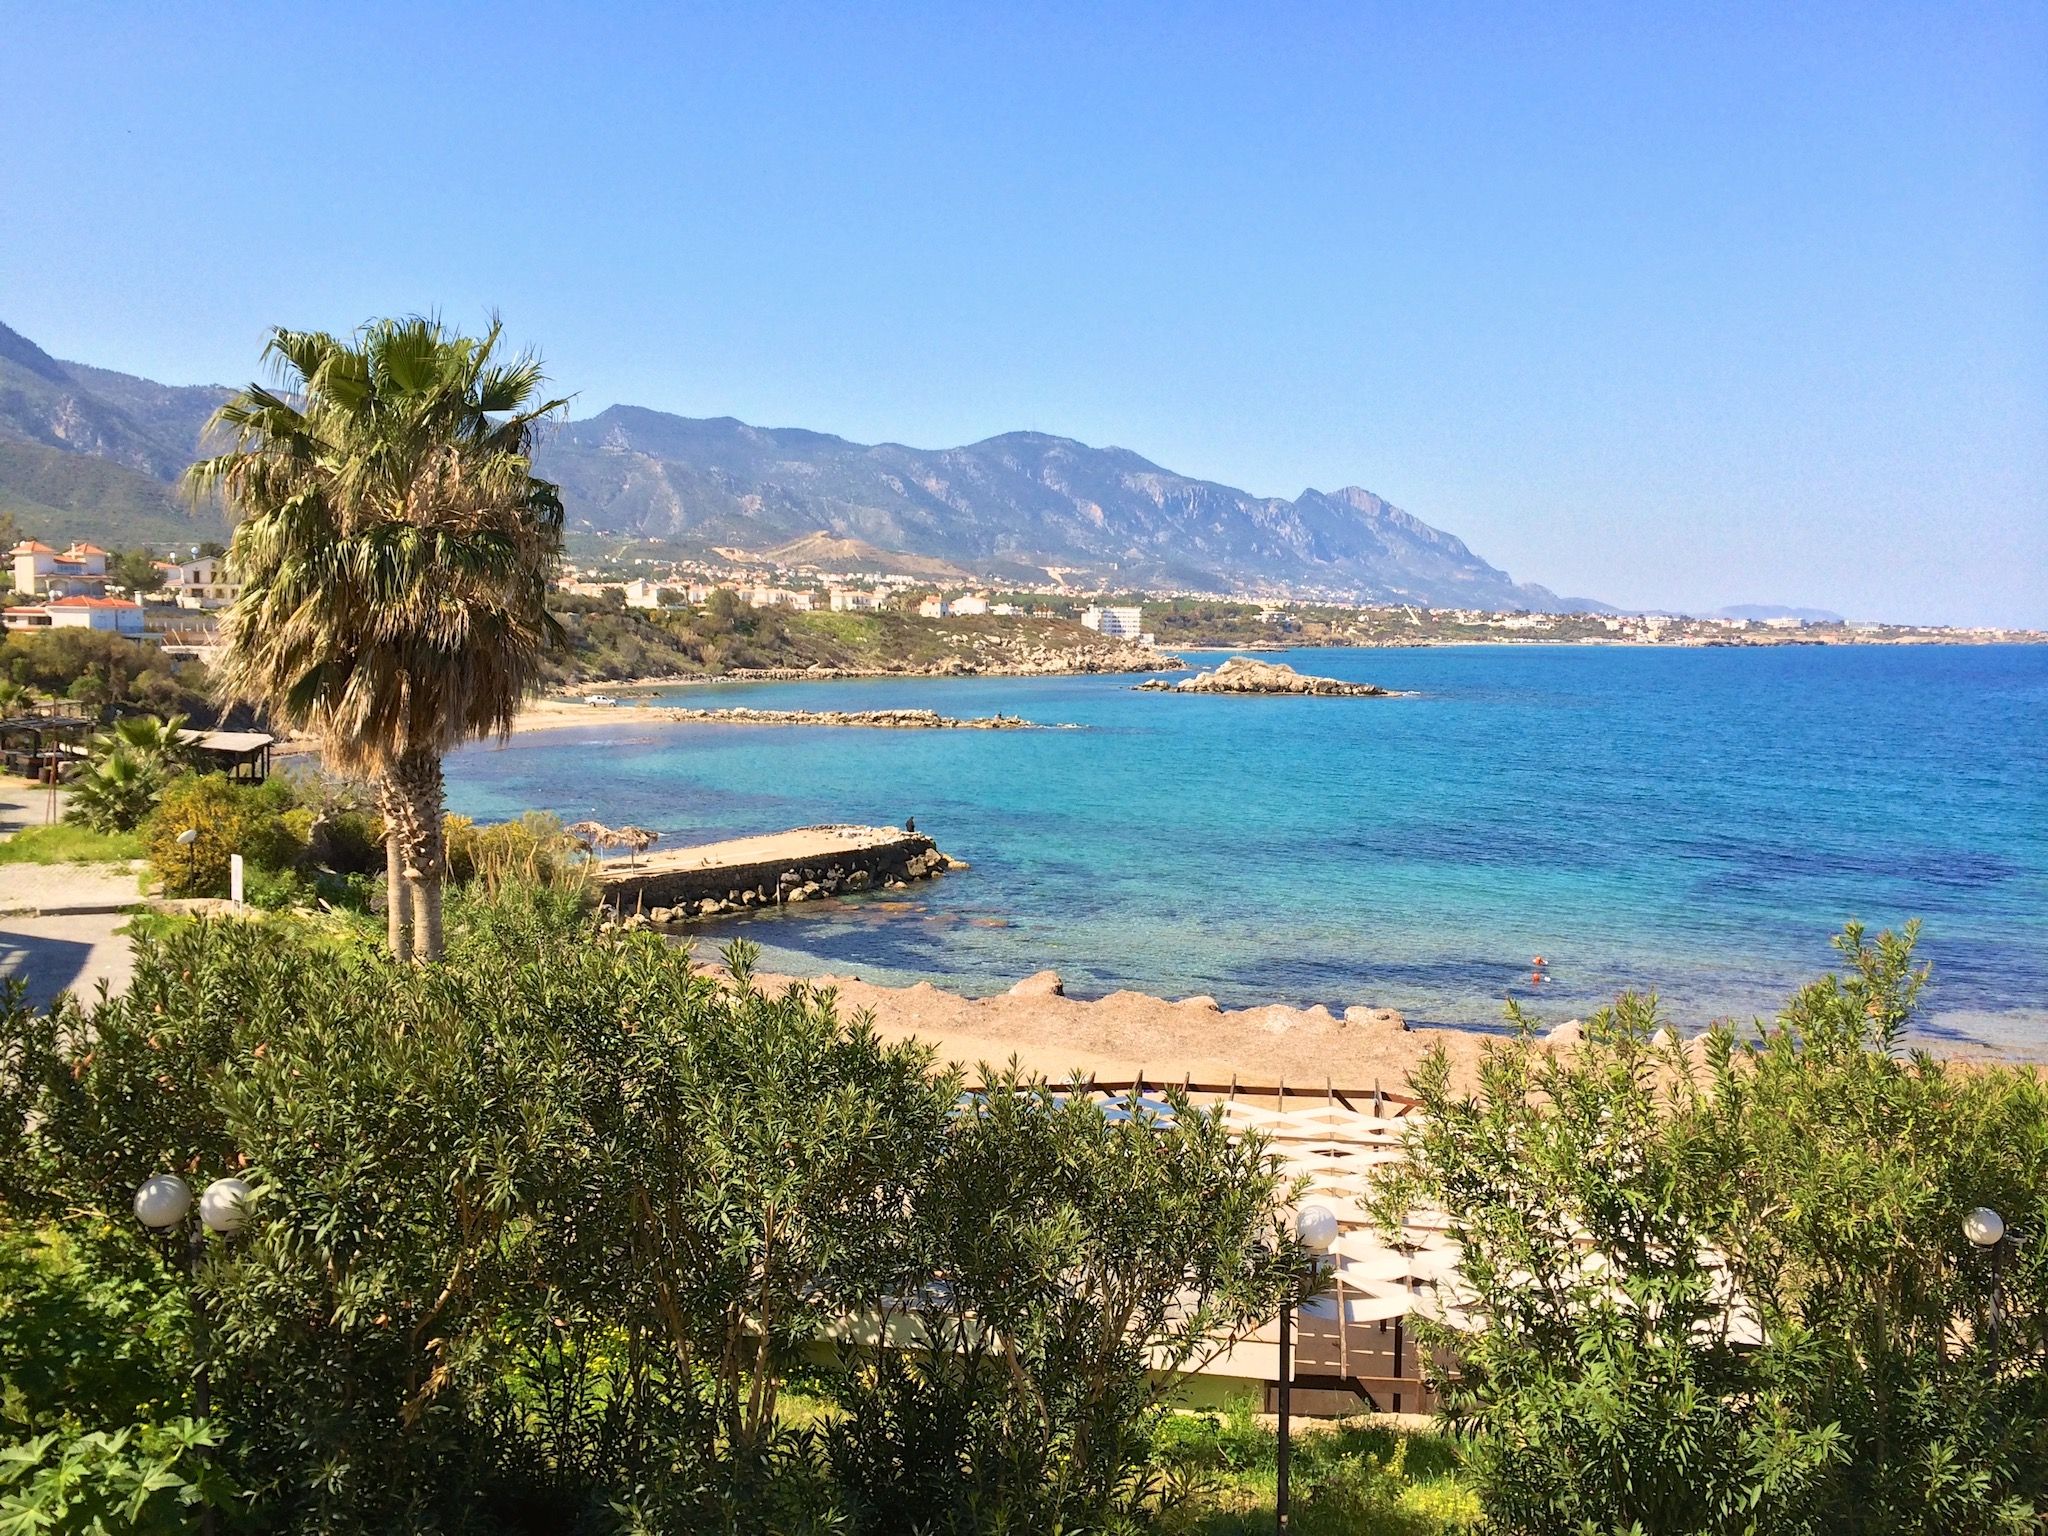 Oliveti e un paesaggio mediterraneo da sognare: Cipro in primavera è semplicemente meravigliosa. Vacanze subacquee a Cipro: Il paesaggio dell'isola è un sogno e può essere visto anche sott'acqua! Nella foto: Kyrenia nel nord dell'isola. Foto: Sascha Tegtmeyer